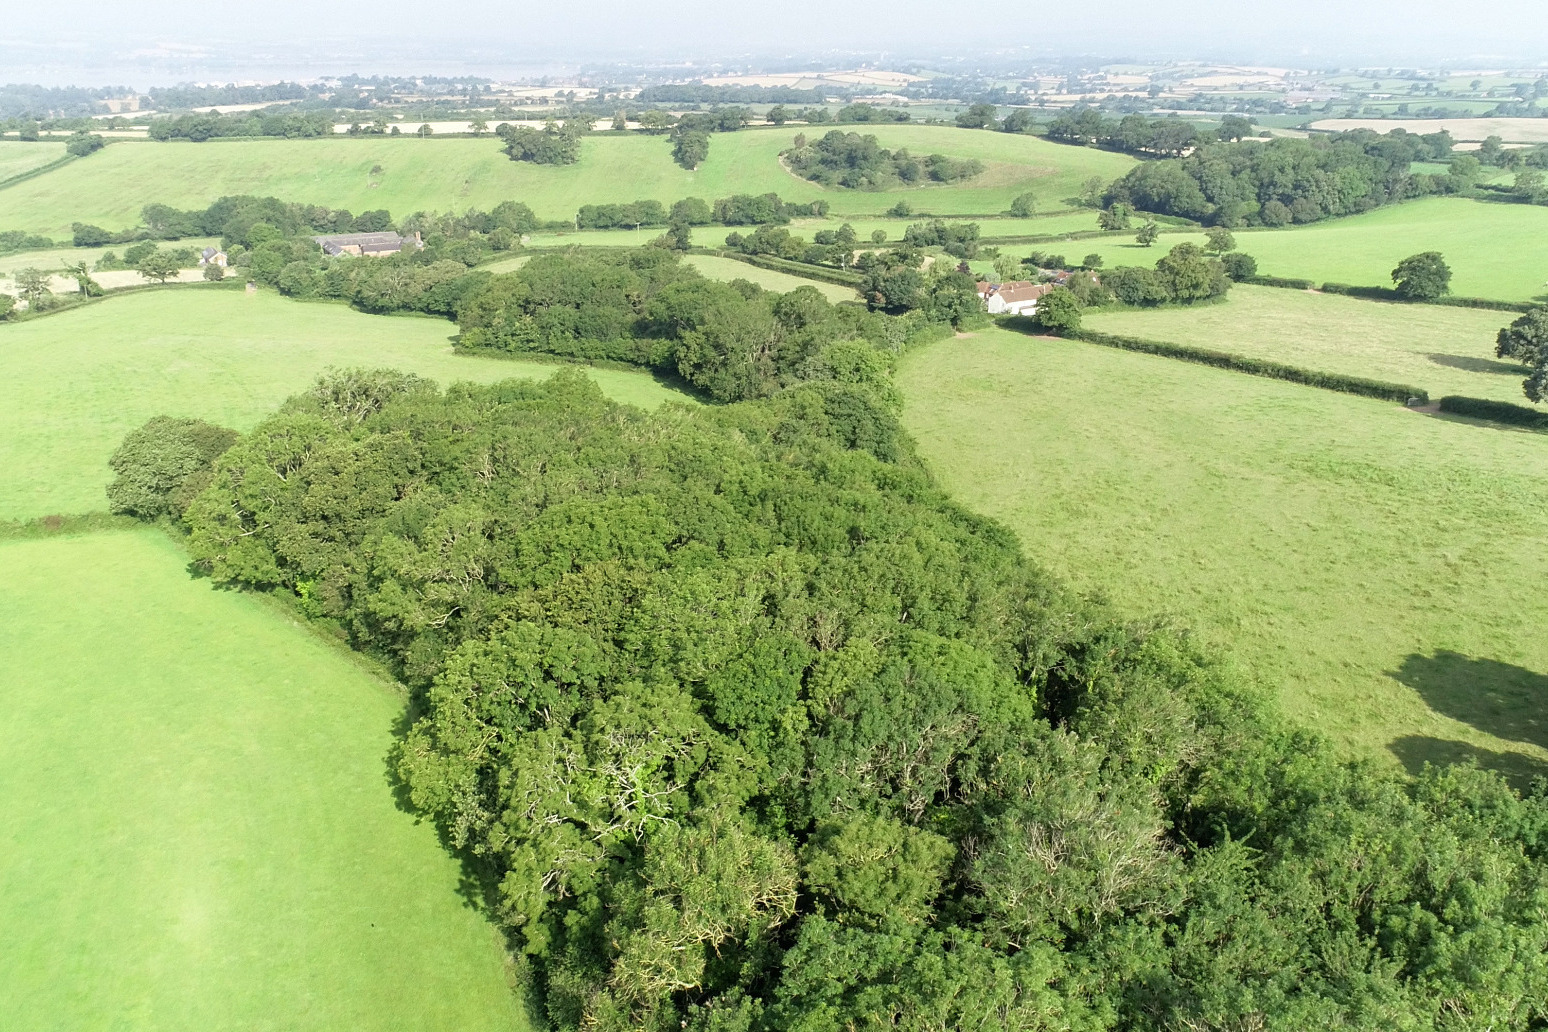 Public urged to help £2.5m bid to turn Devon site into woodland wildlife haven 